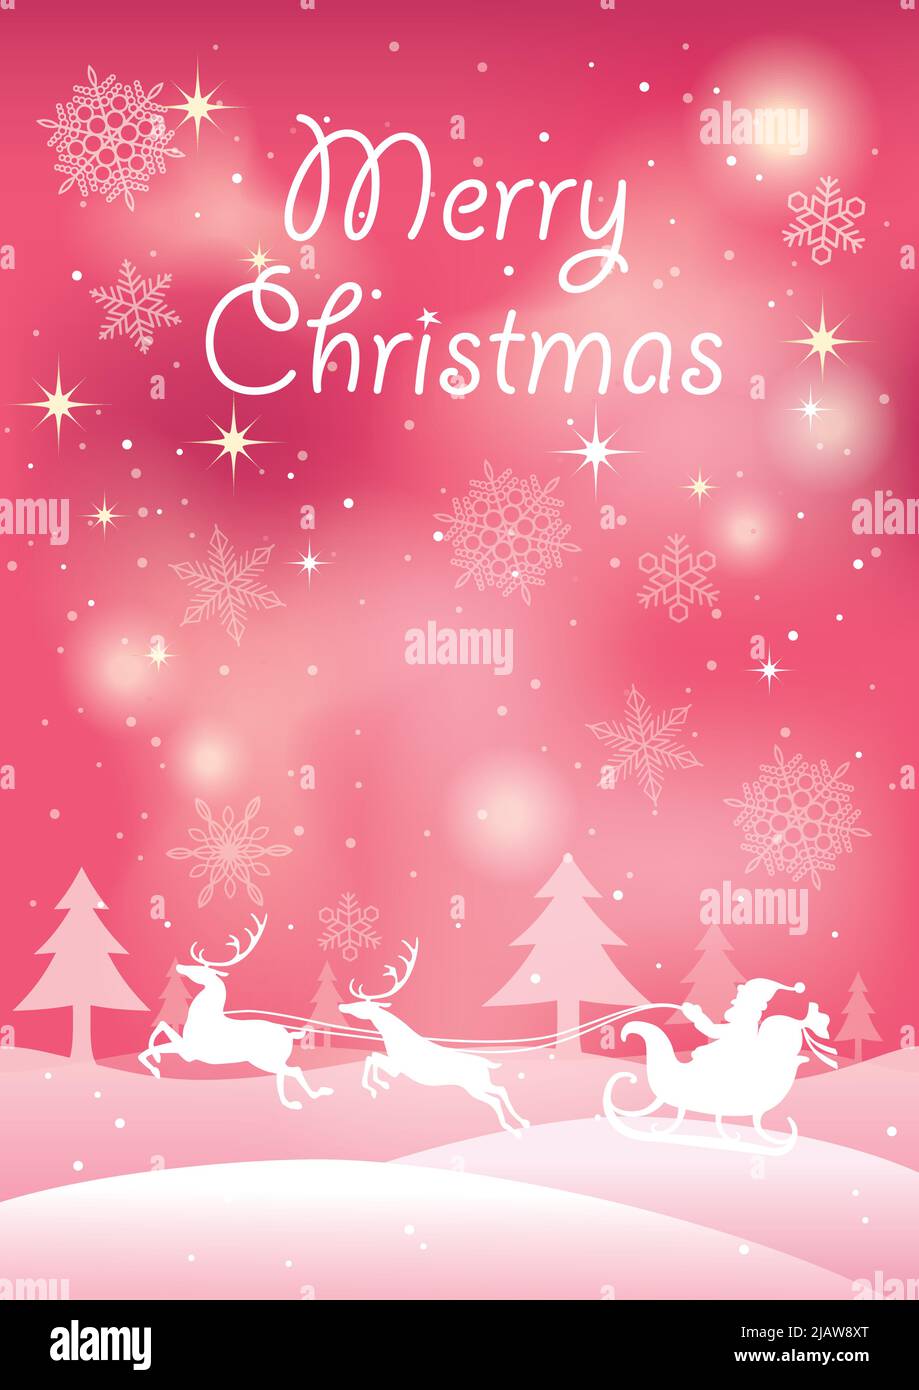 Illustration de Noël avec le Père Noël et le renne dans une forêt enneigée. Illustration vectorielle avec espace de texte. Illustration de Vecteur